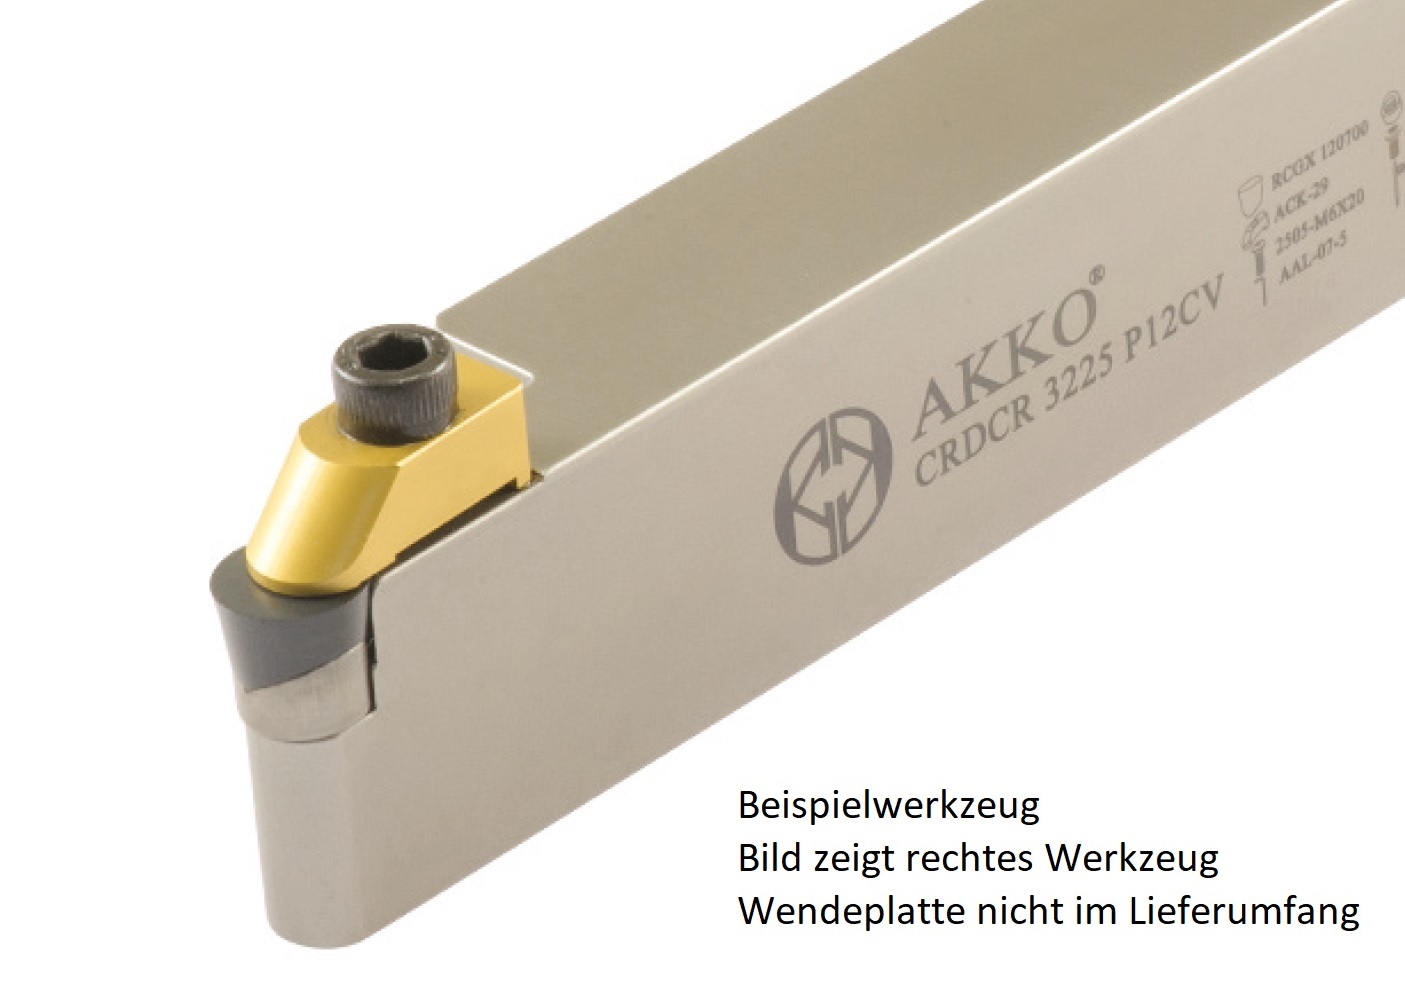 AKKO-Außen-Drehhalter C-System für RCGX 060600
rechts Schaft 32 x 25 mm